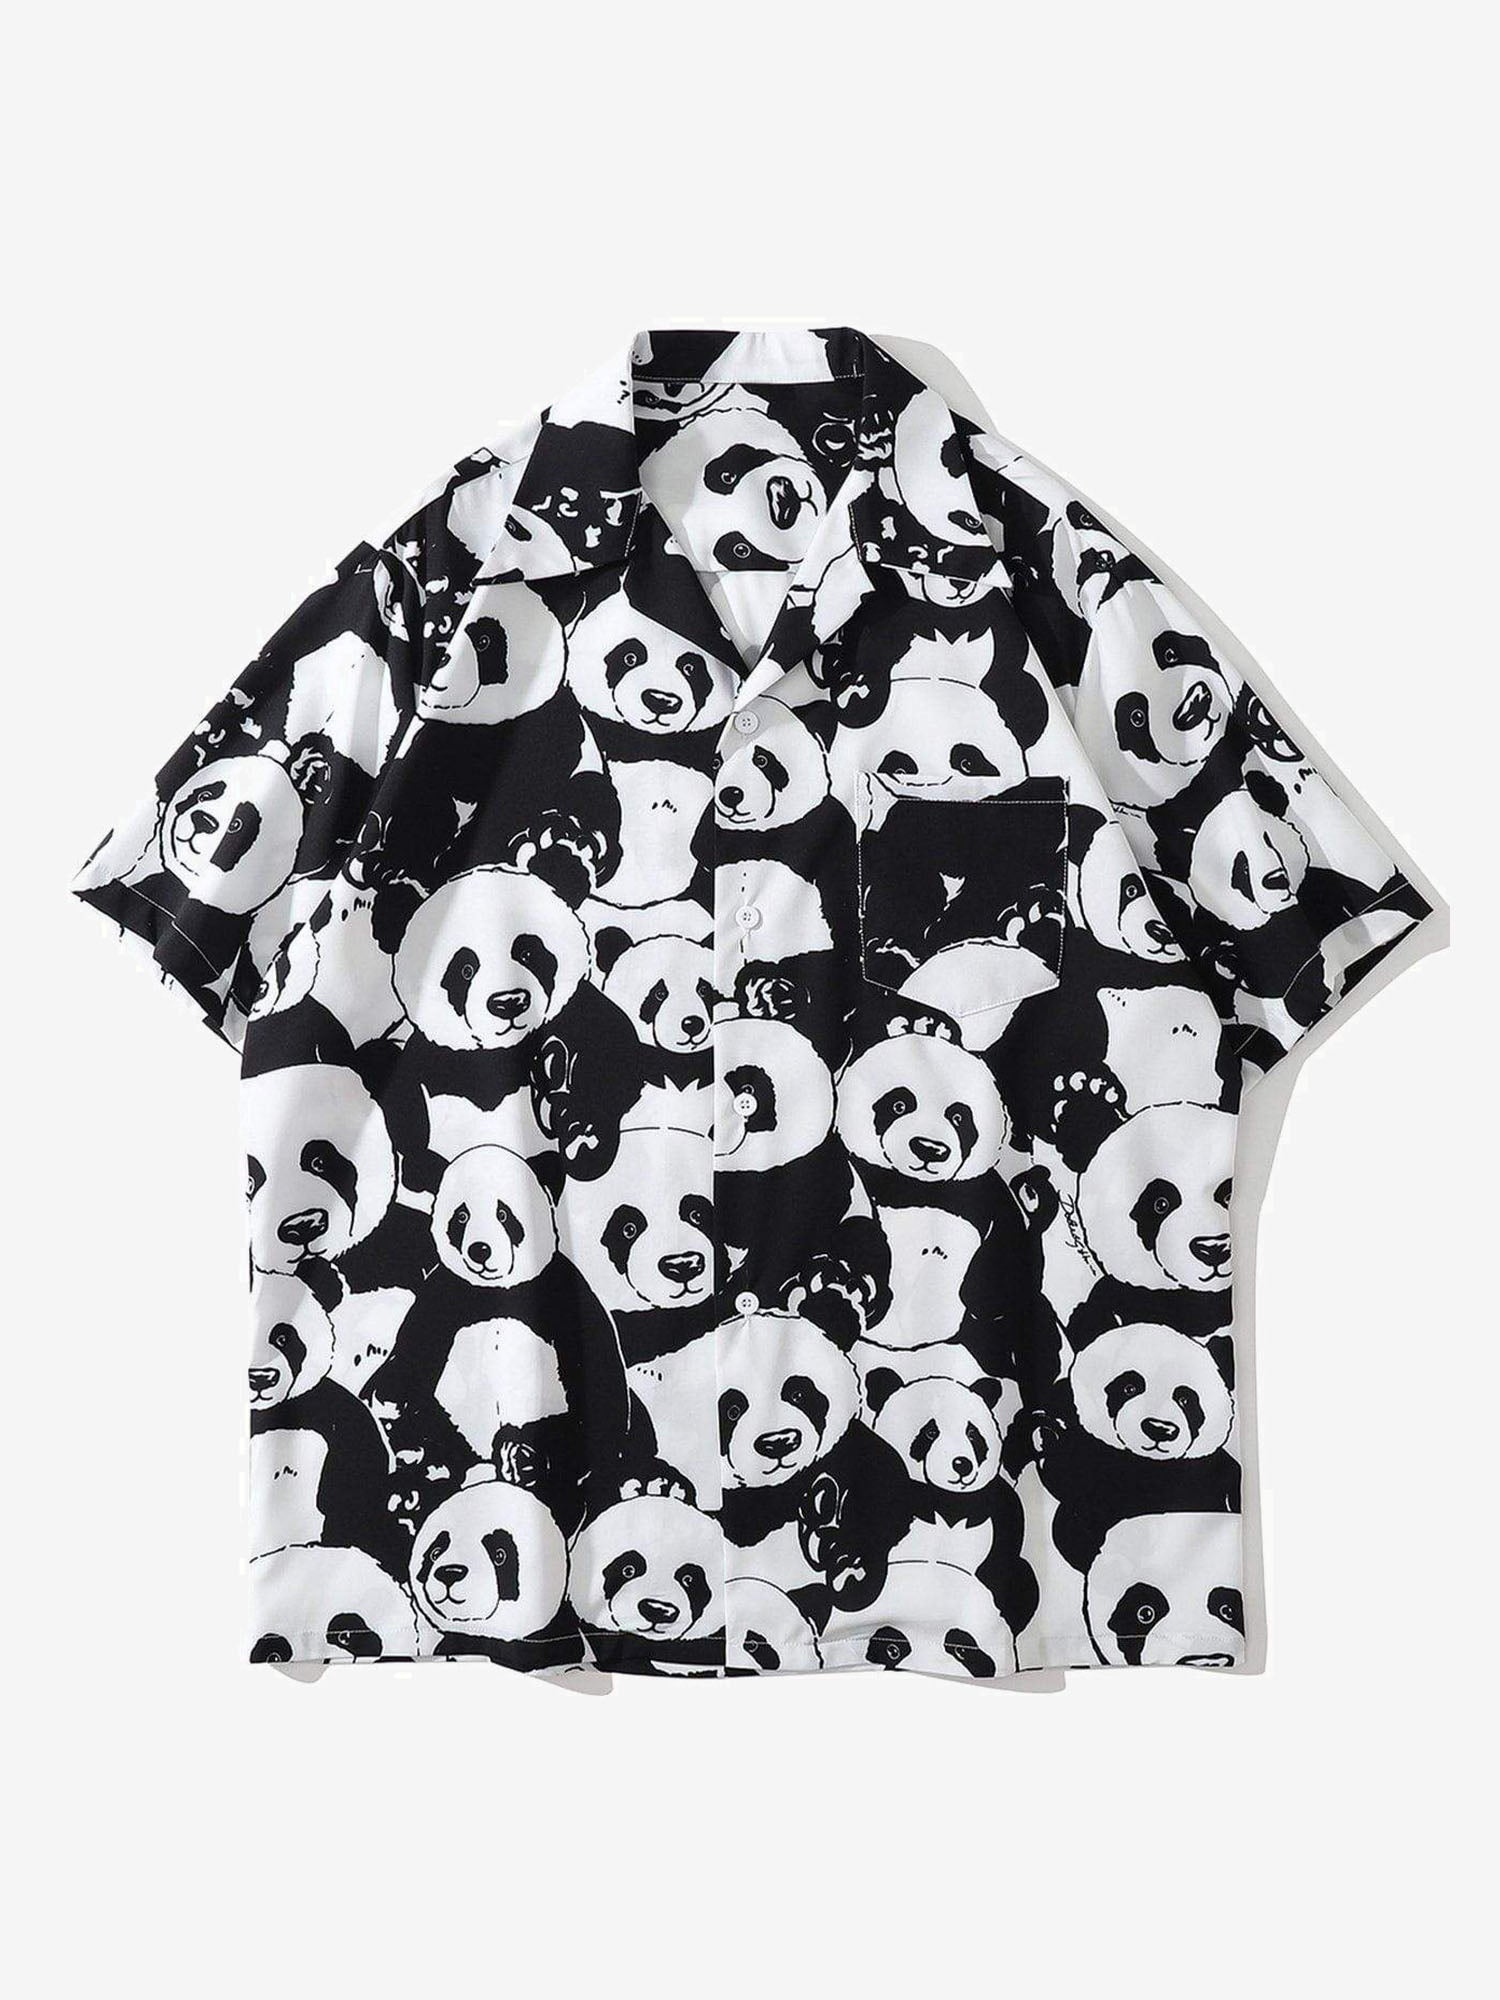 JUSTNOTAG Panda Print Short Sleeve Shirts